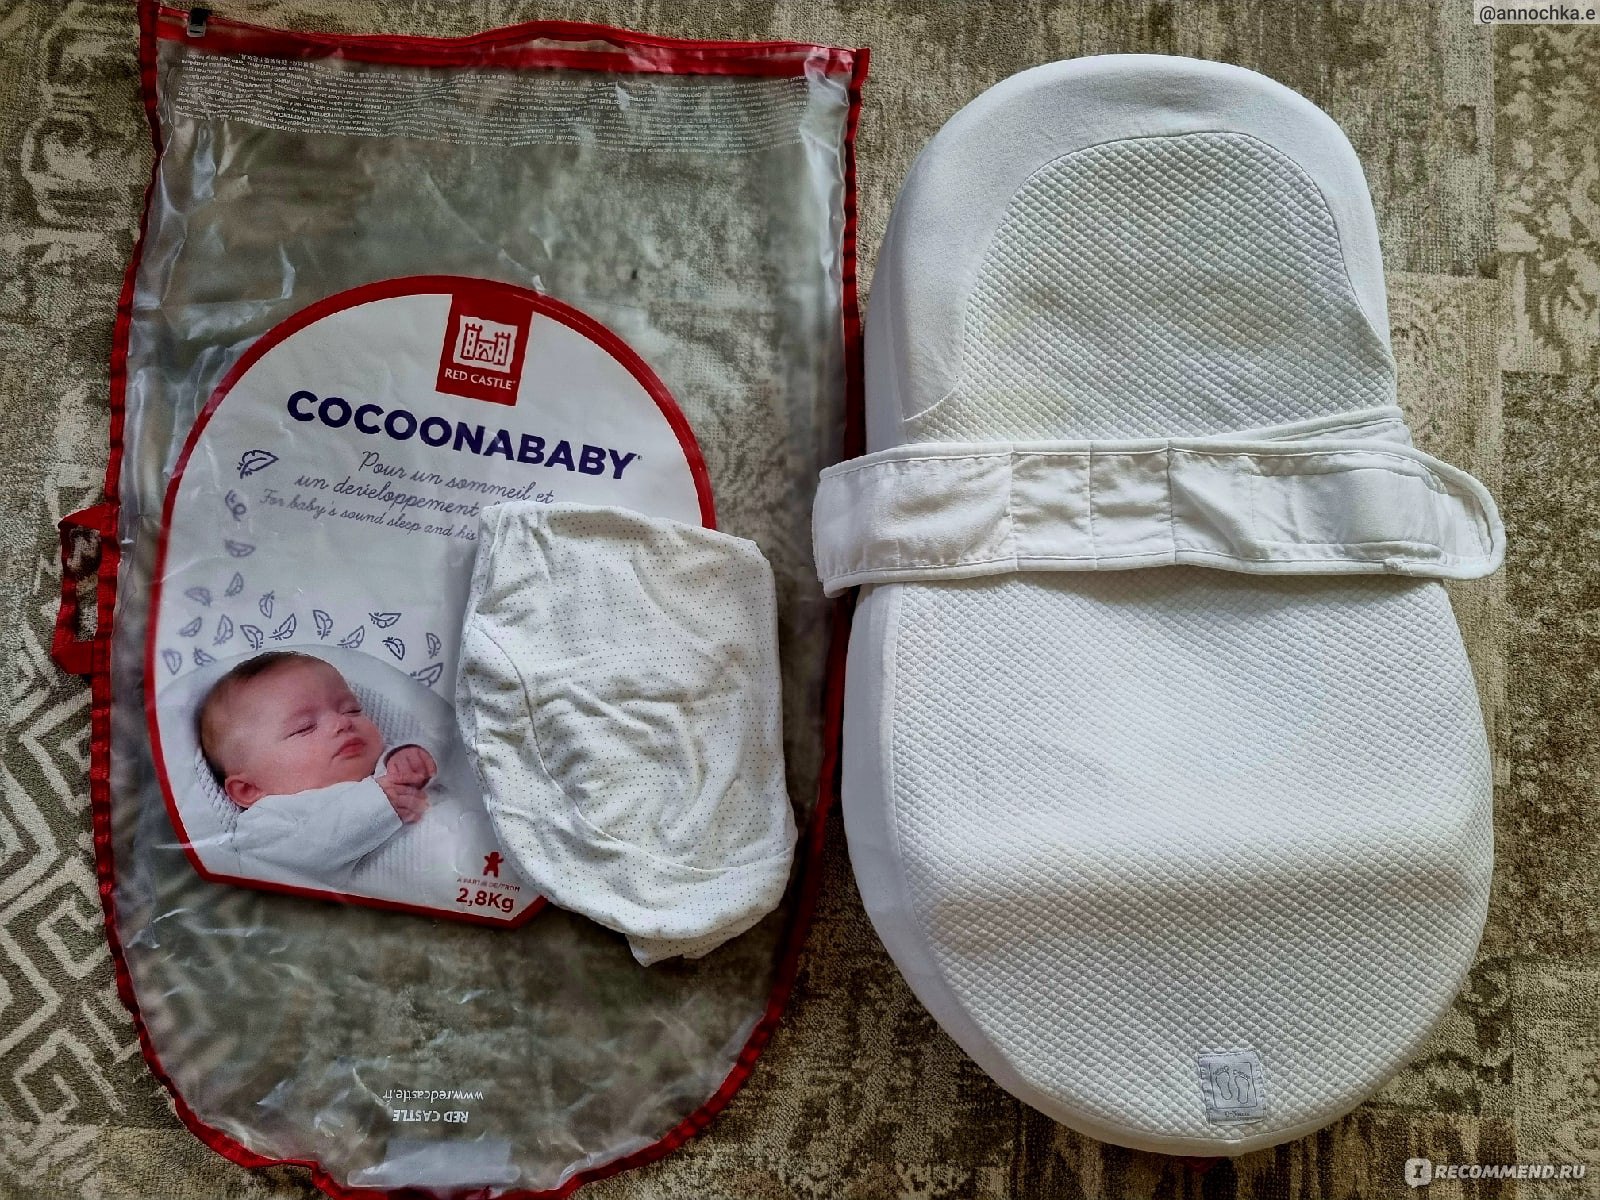 Матрас детский Red castle Эргономичный кокон (матрац) "Cocoonababy" для новорожденных фото